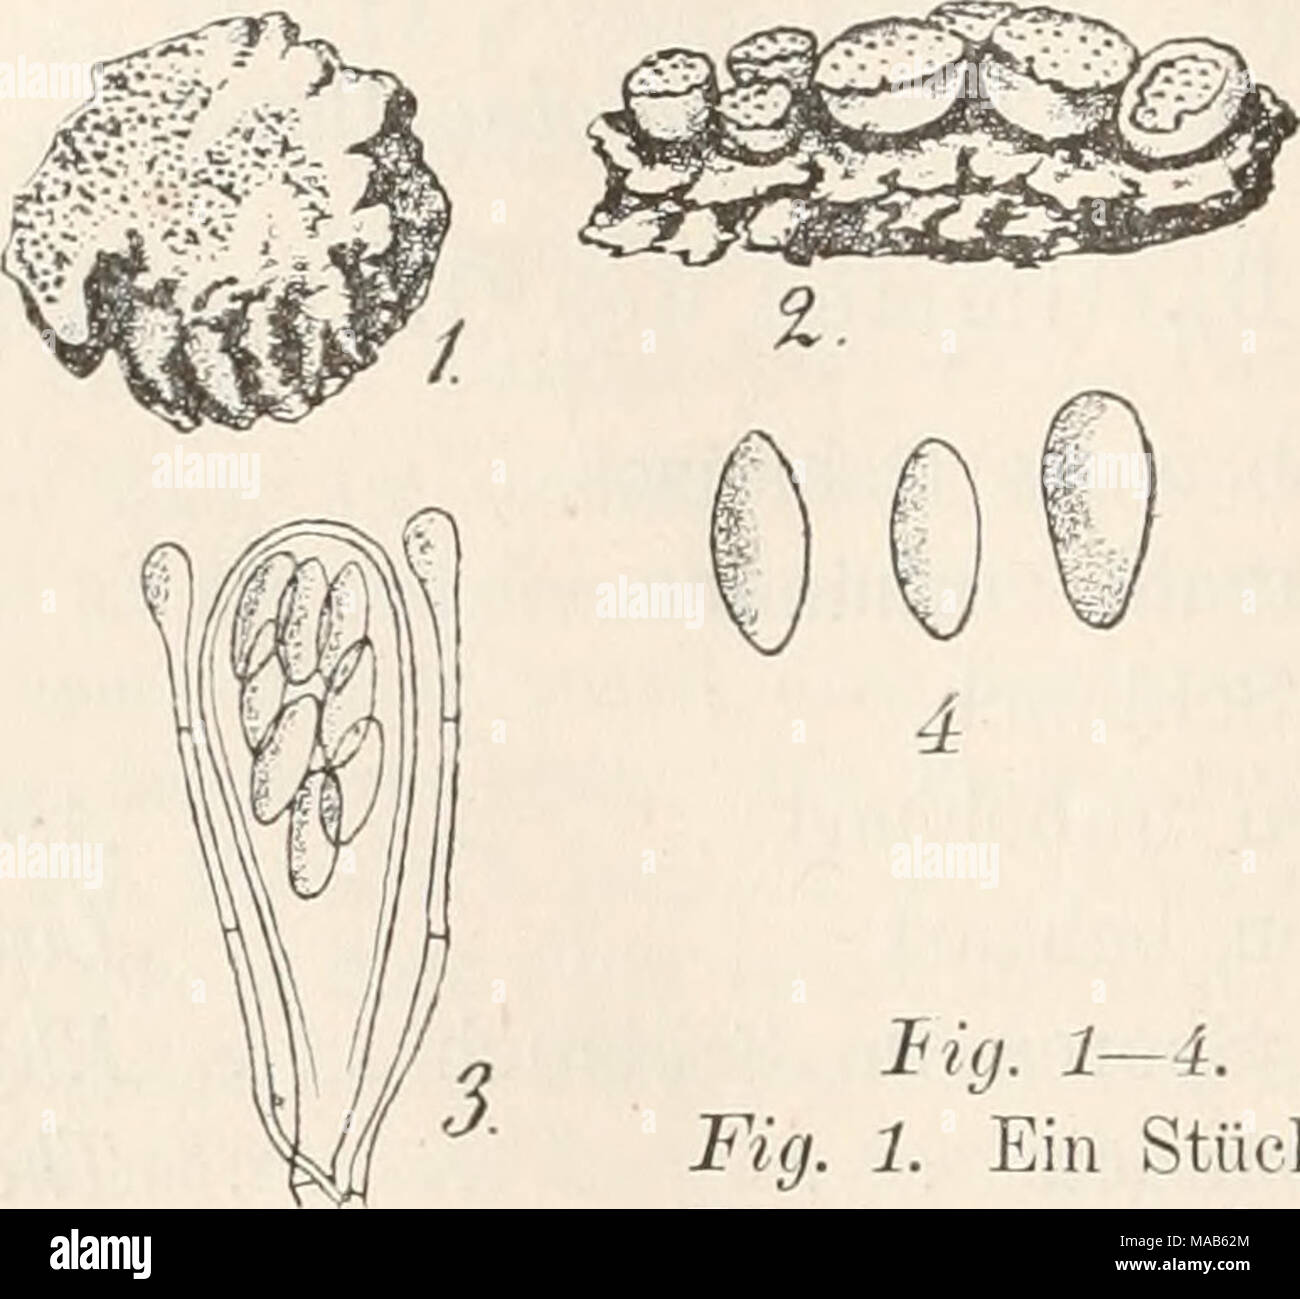 . Dr. L. Rabenhorst's Kryptogamen-Flora von Deutschland, Oesterreich und der Schweiz . Hg. 1—4. Ascophanus subfuscus. Fig. 1. Ein Stück Hundskoth mit dem Pilz in natfirl. Grösse. Fig. 2. Einzelne Apothecien. Fig. 3. Schlaucli mit Para- physen. Fig. 4. Sporen. Fig. 5. Schlaucli mit Paraphysen von Ascophanus glaucellus. (Fig. 2 massig, Fig. 3—5 stark vergrössert. Fig. 1 u. 2 nach Boud., Mem. Ascob. pl. 10, flg. 28. Fig. 3 — 5 Originalzeichnungen nach der Natur.) Stock Photo